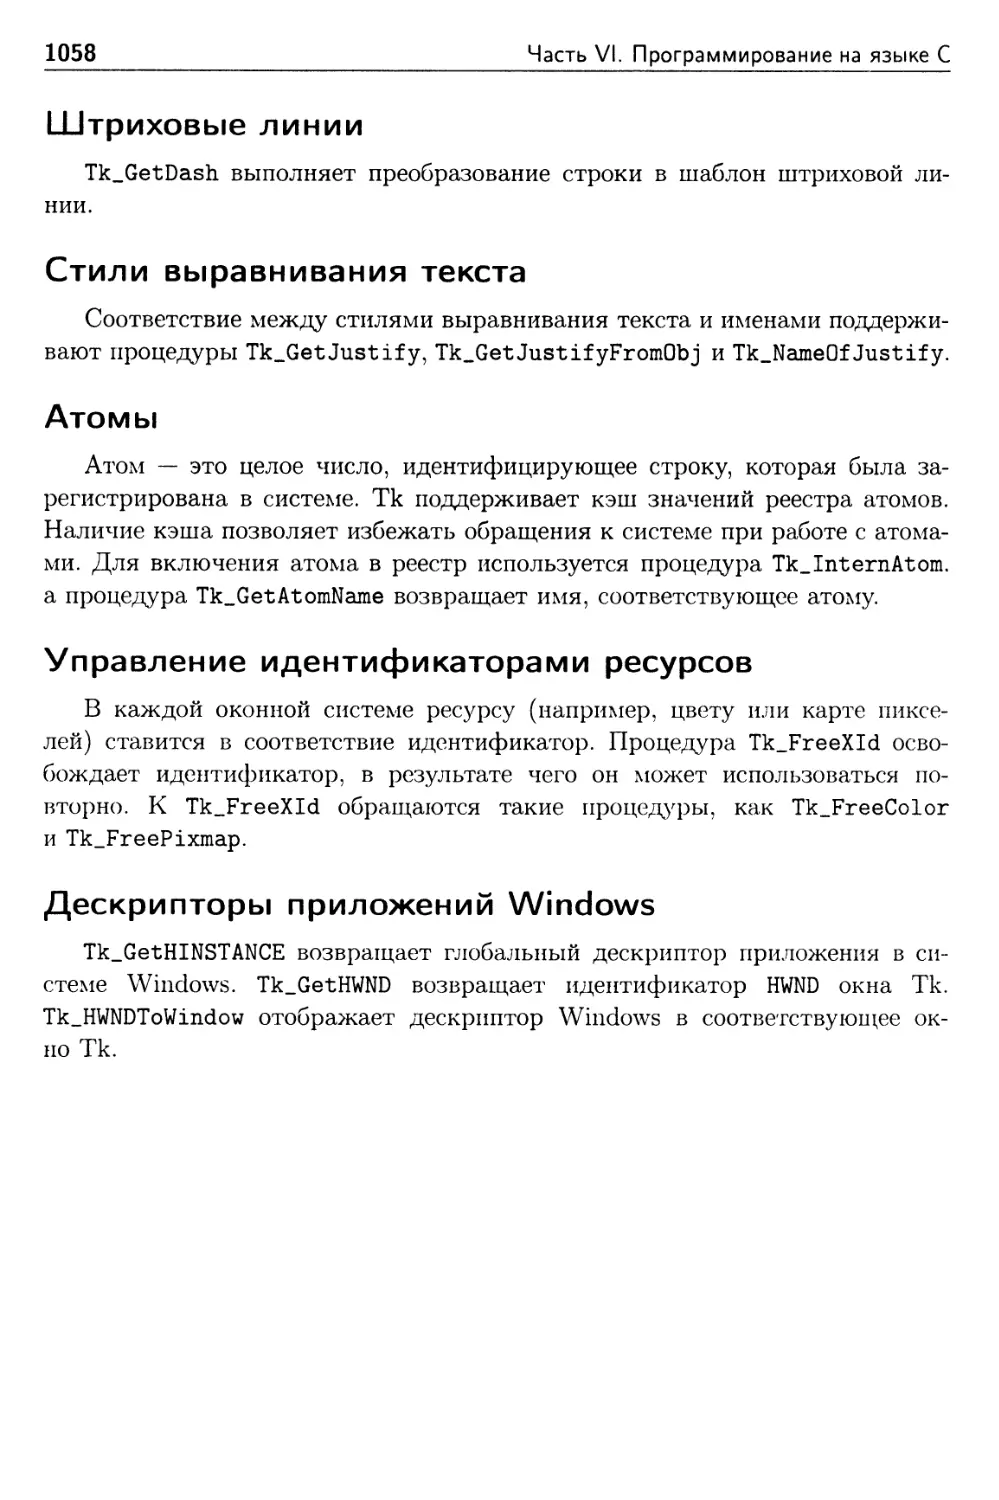 Штриховые линии
Стили выравнивания текста
Атомы
Управление идентификаторами ресурсов
Дескрипторы приложений Windows